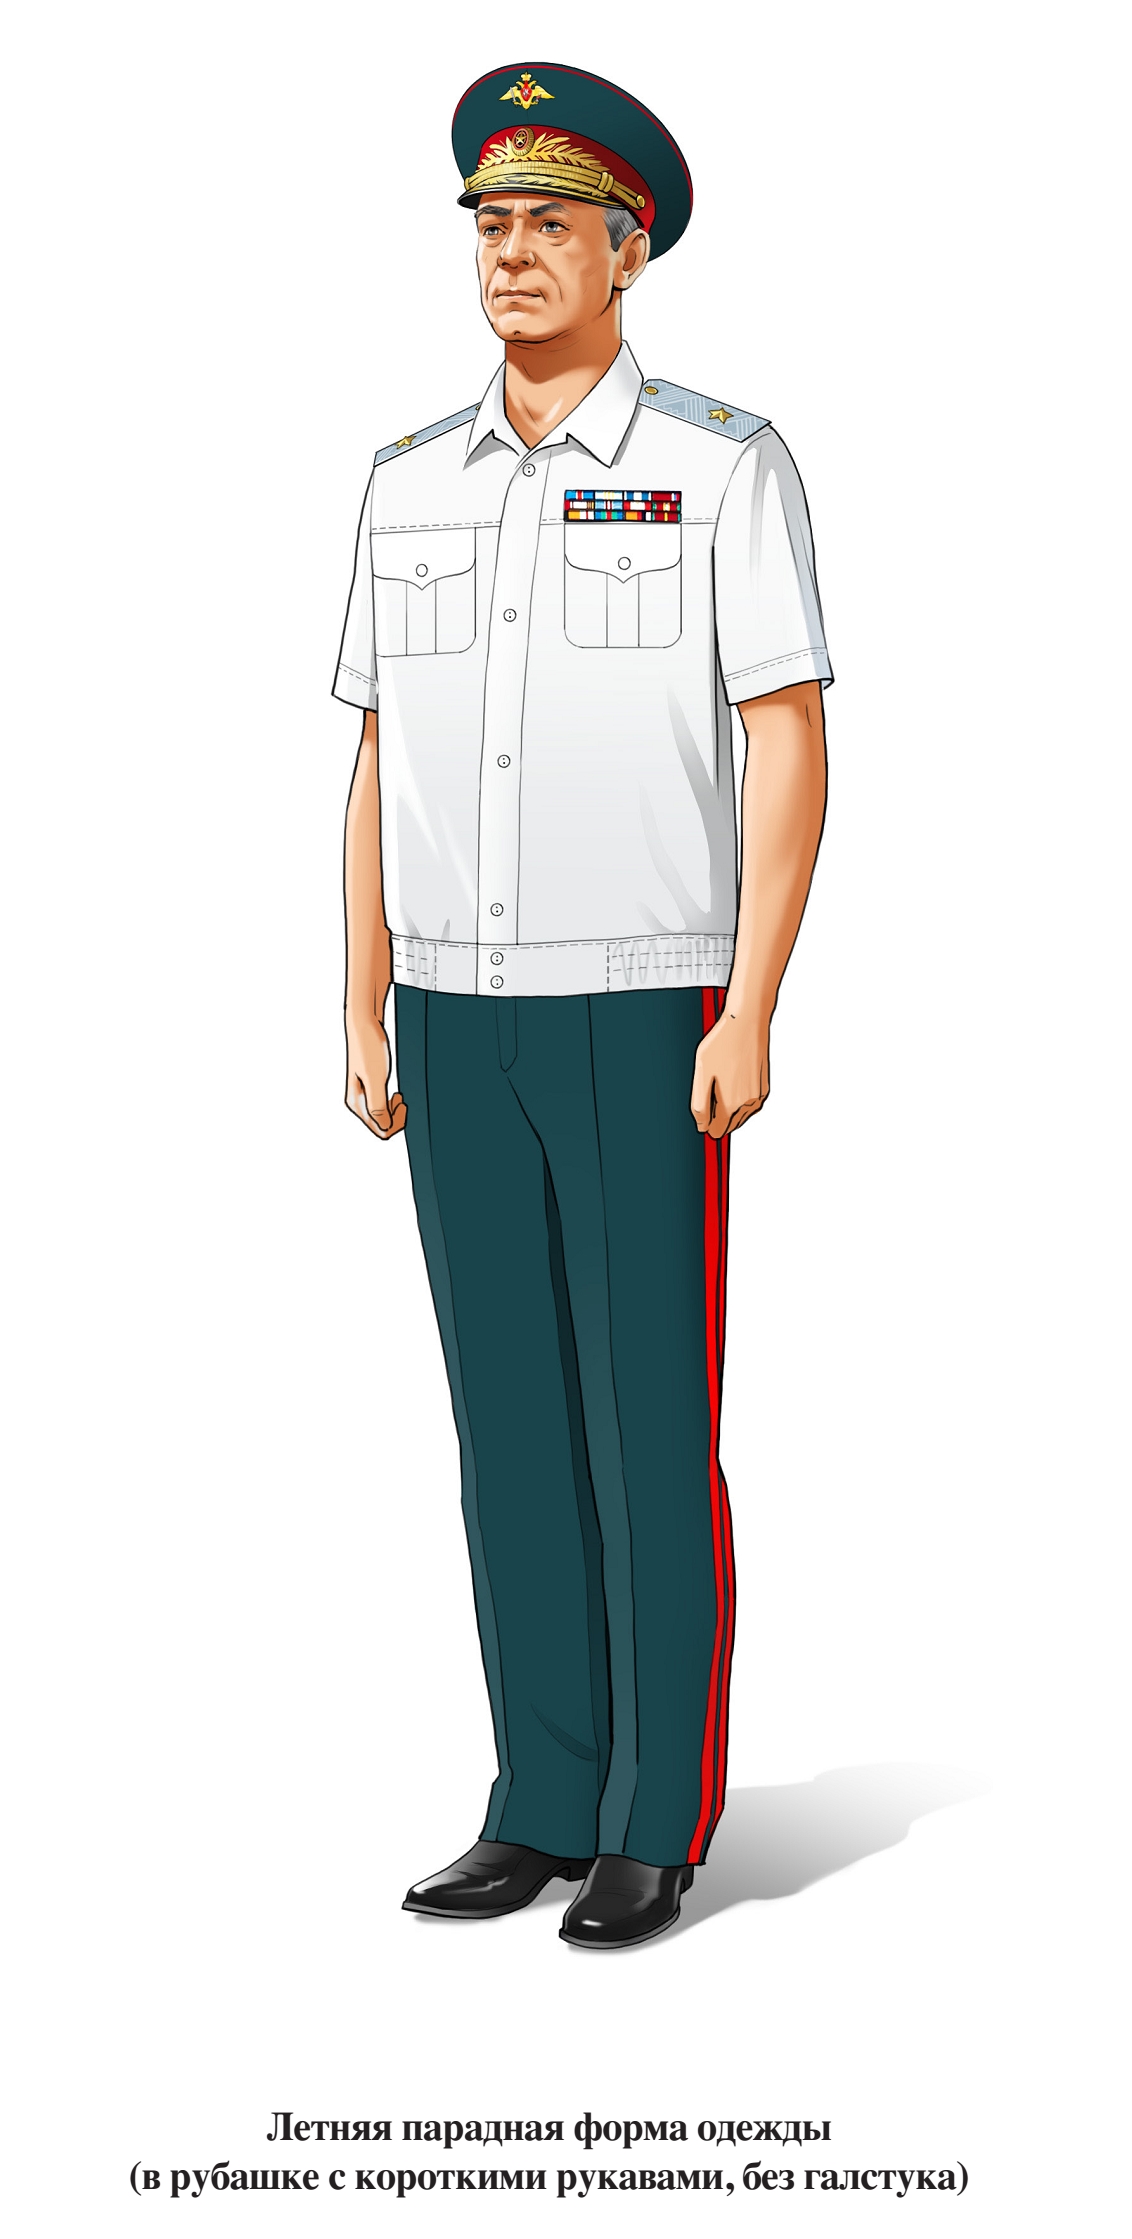 Генерал, летняя парадная форма, в рубашке с коротким рукавом, без галстука